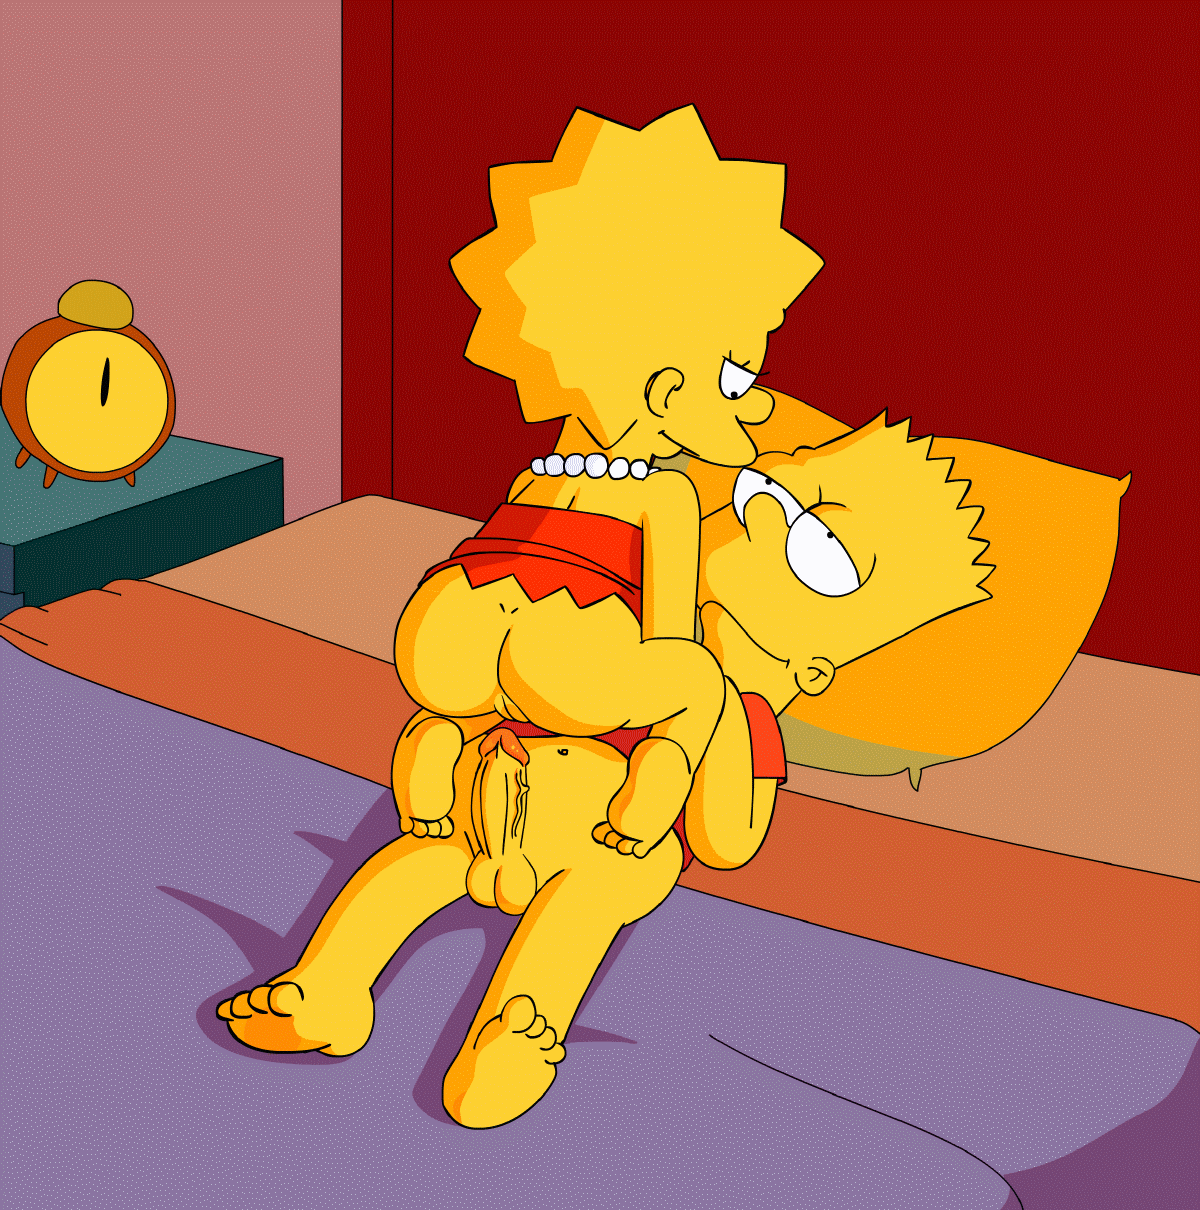 Lisa und bart nackt